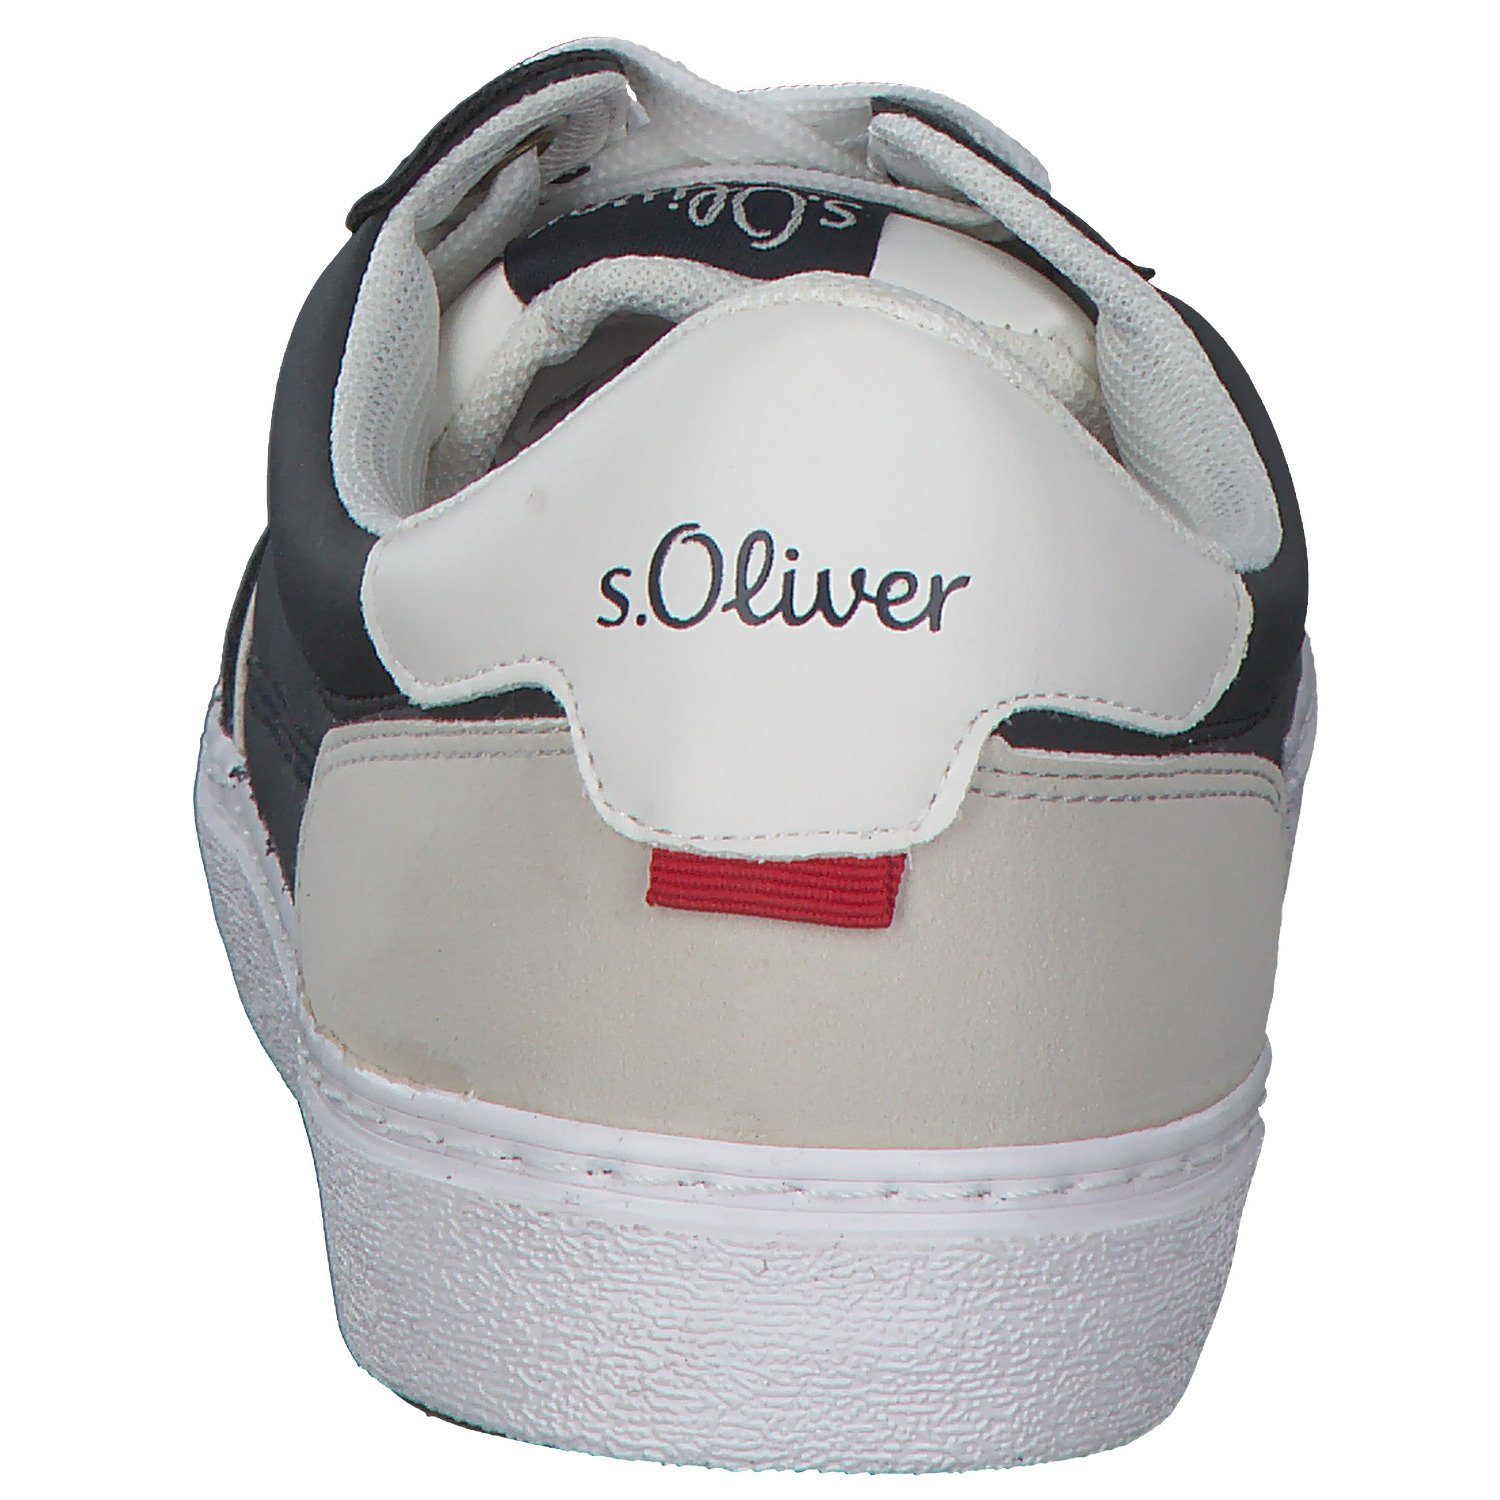 S. (20301480) s.Oliver Sneaker Blau 13602 Oliver